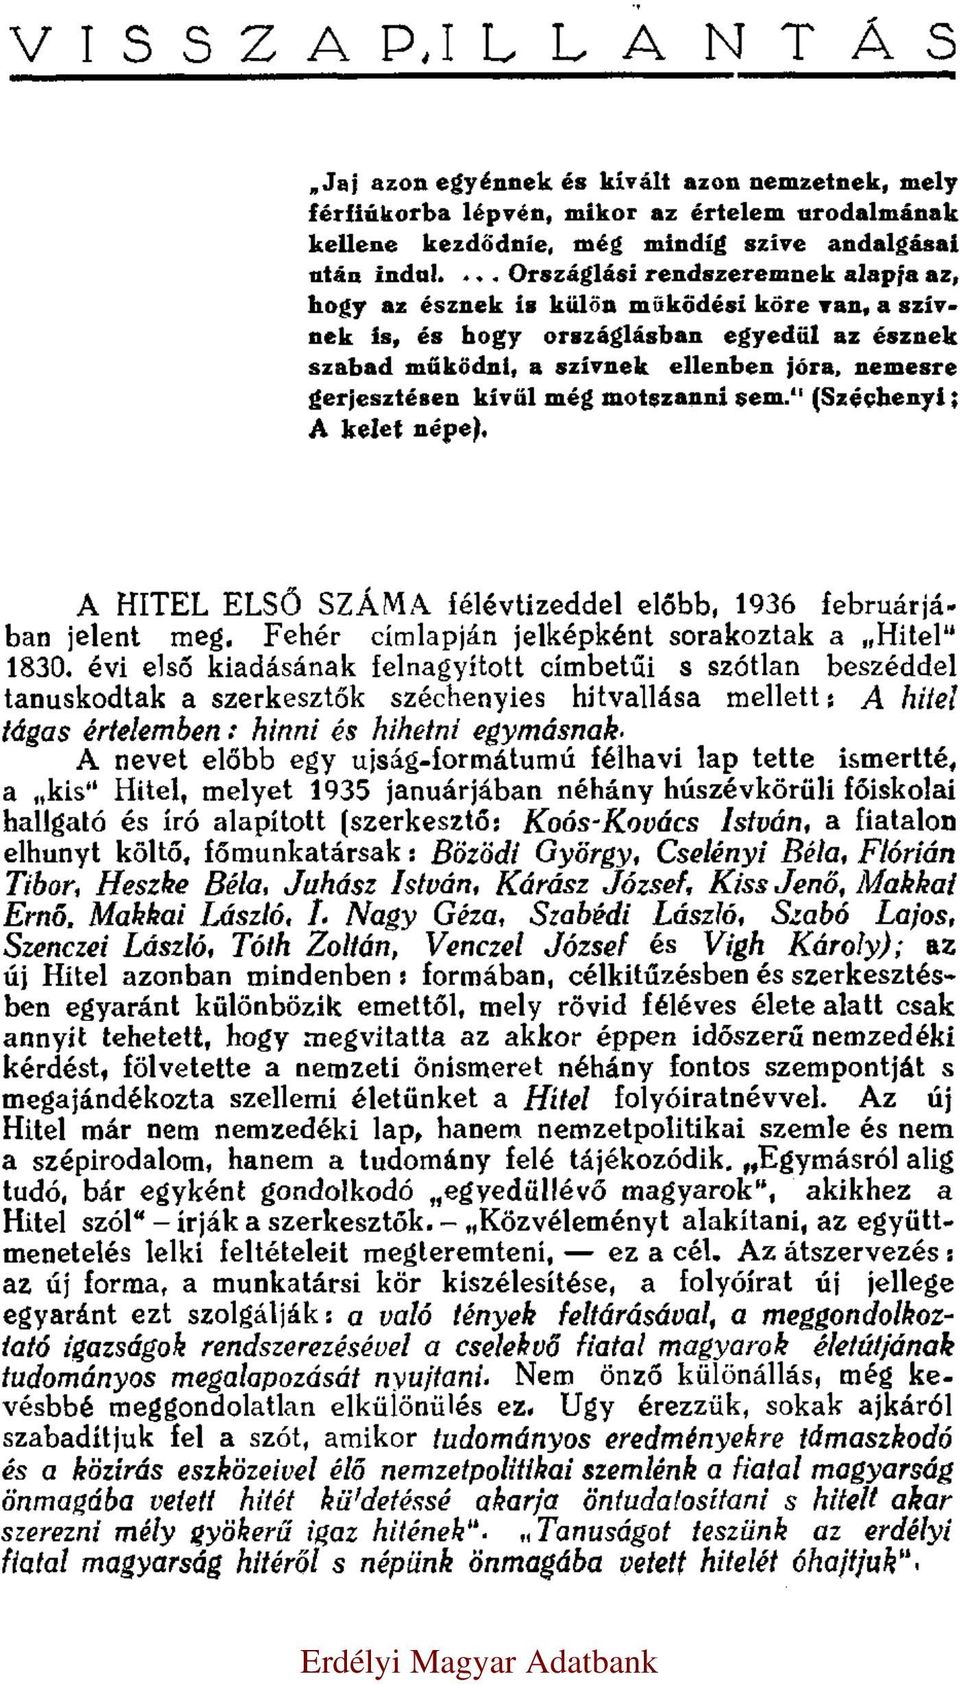 kívűl még motszanni sem. (Széchenyi: A kelet népe). A HITEL ELSŐ SZÁMA félévtizeddel előbb, 1936 februárjában jelent meg. Fehér címlapján jelképként sorakoztak a Hitel 1830.